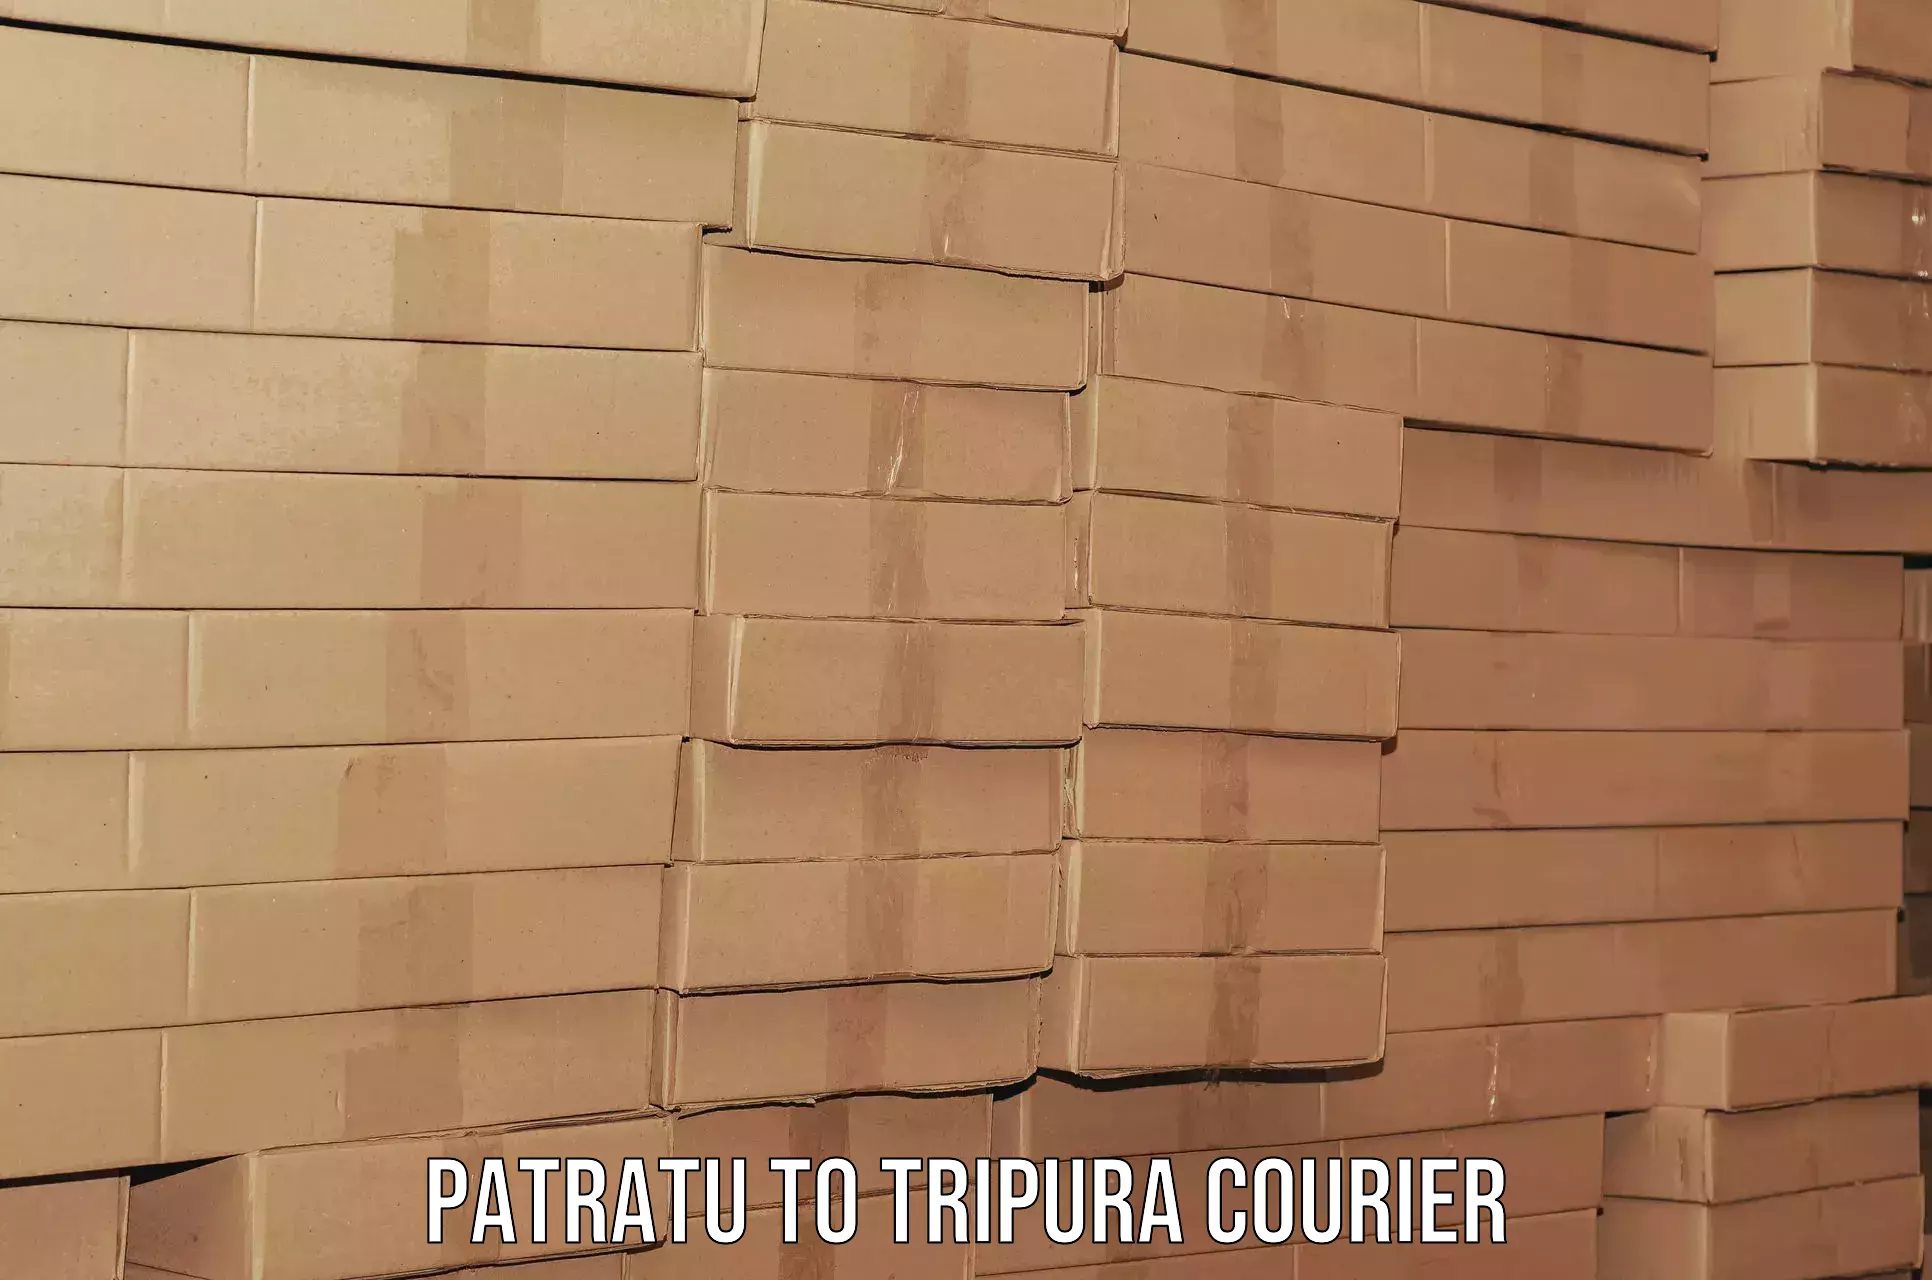 Furniture delivery service Patratu to Tripura